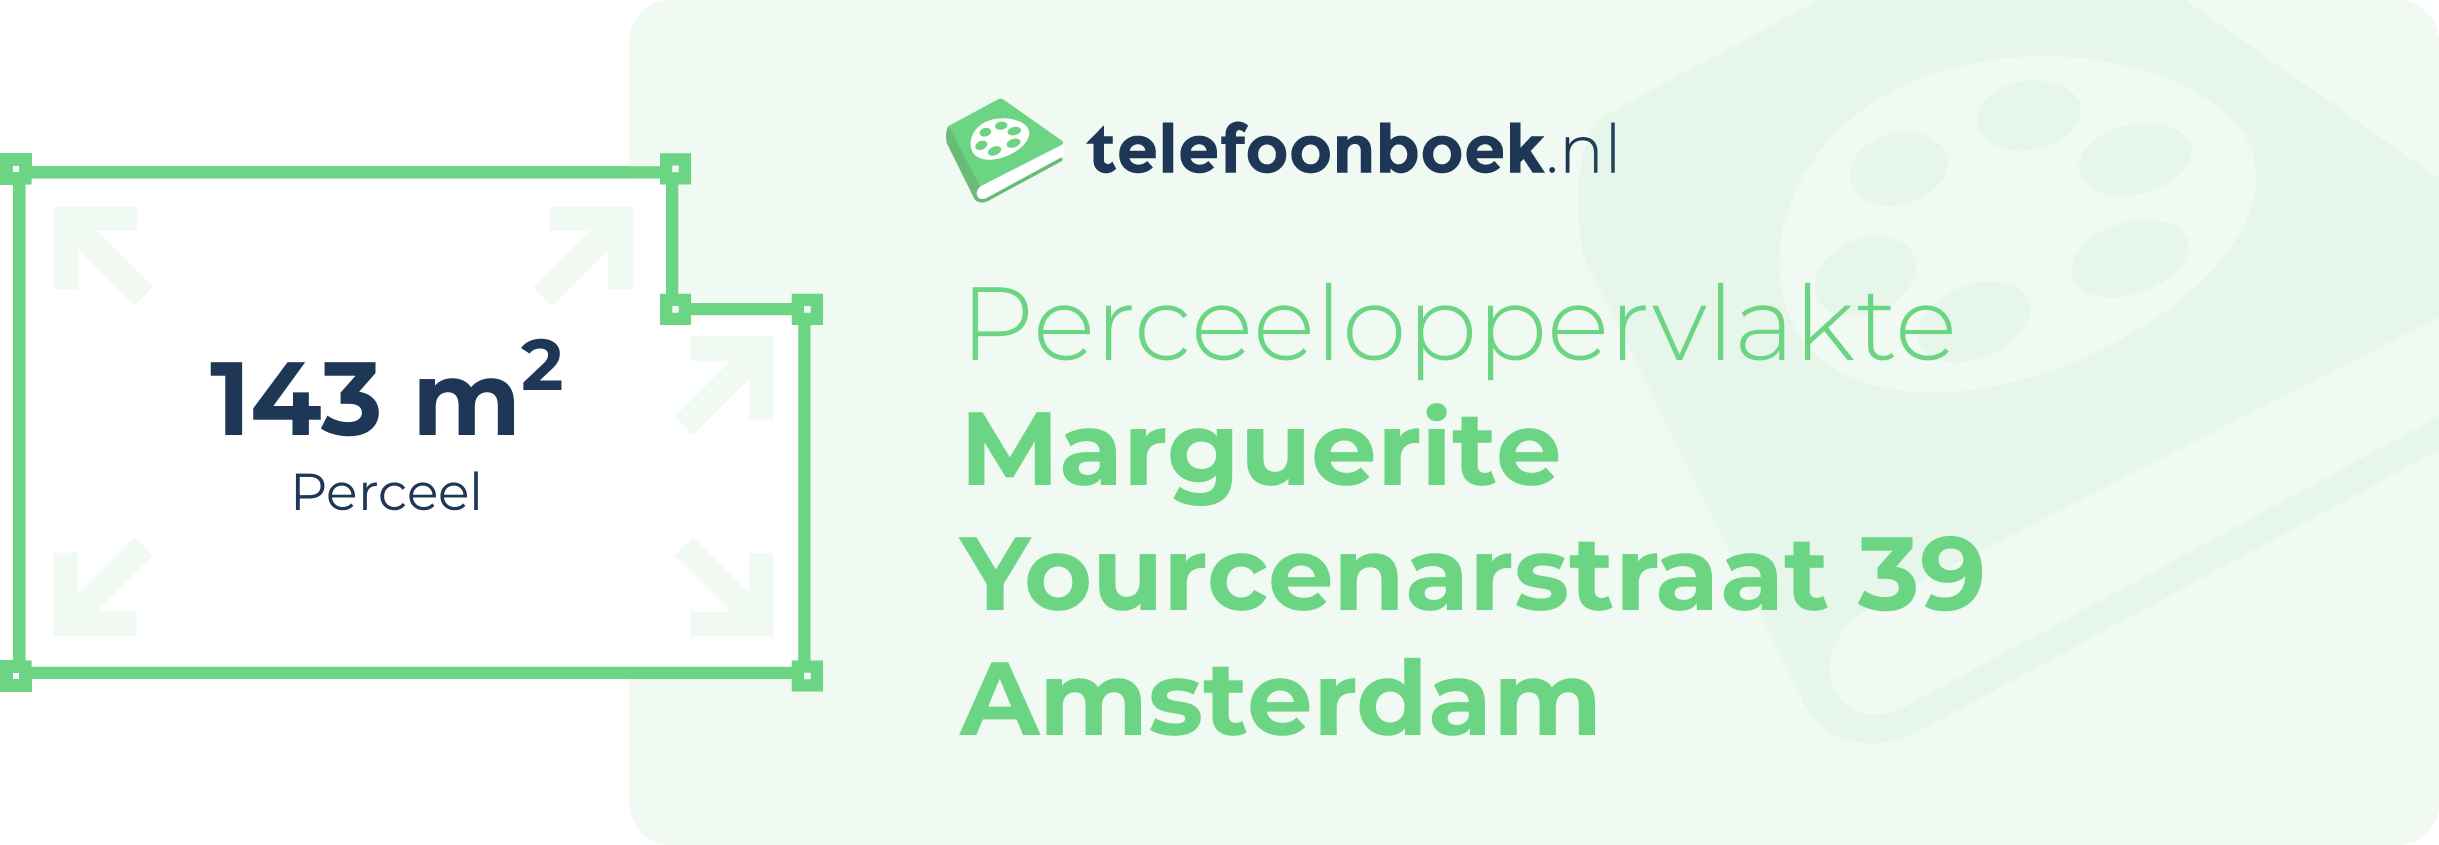 Perceeloppervlakte Marguerite Yourcenarstraat 39 Amsterdam